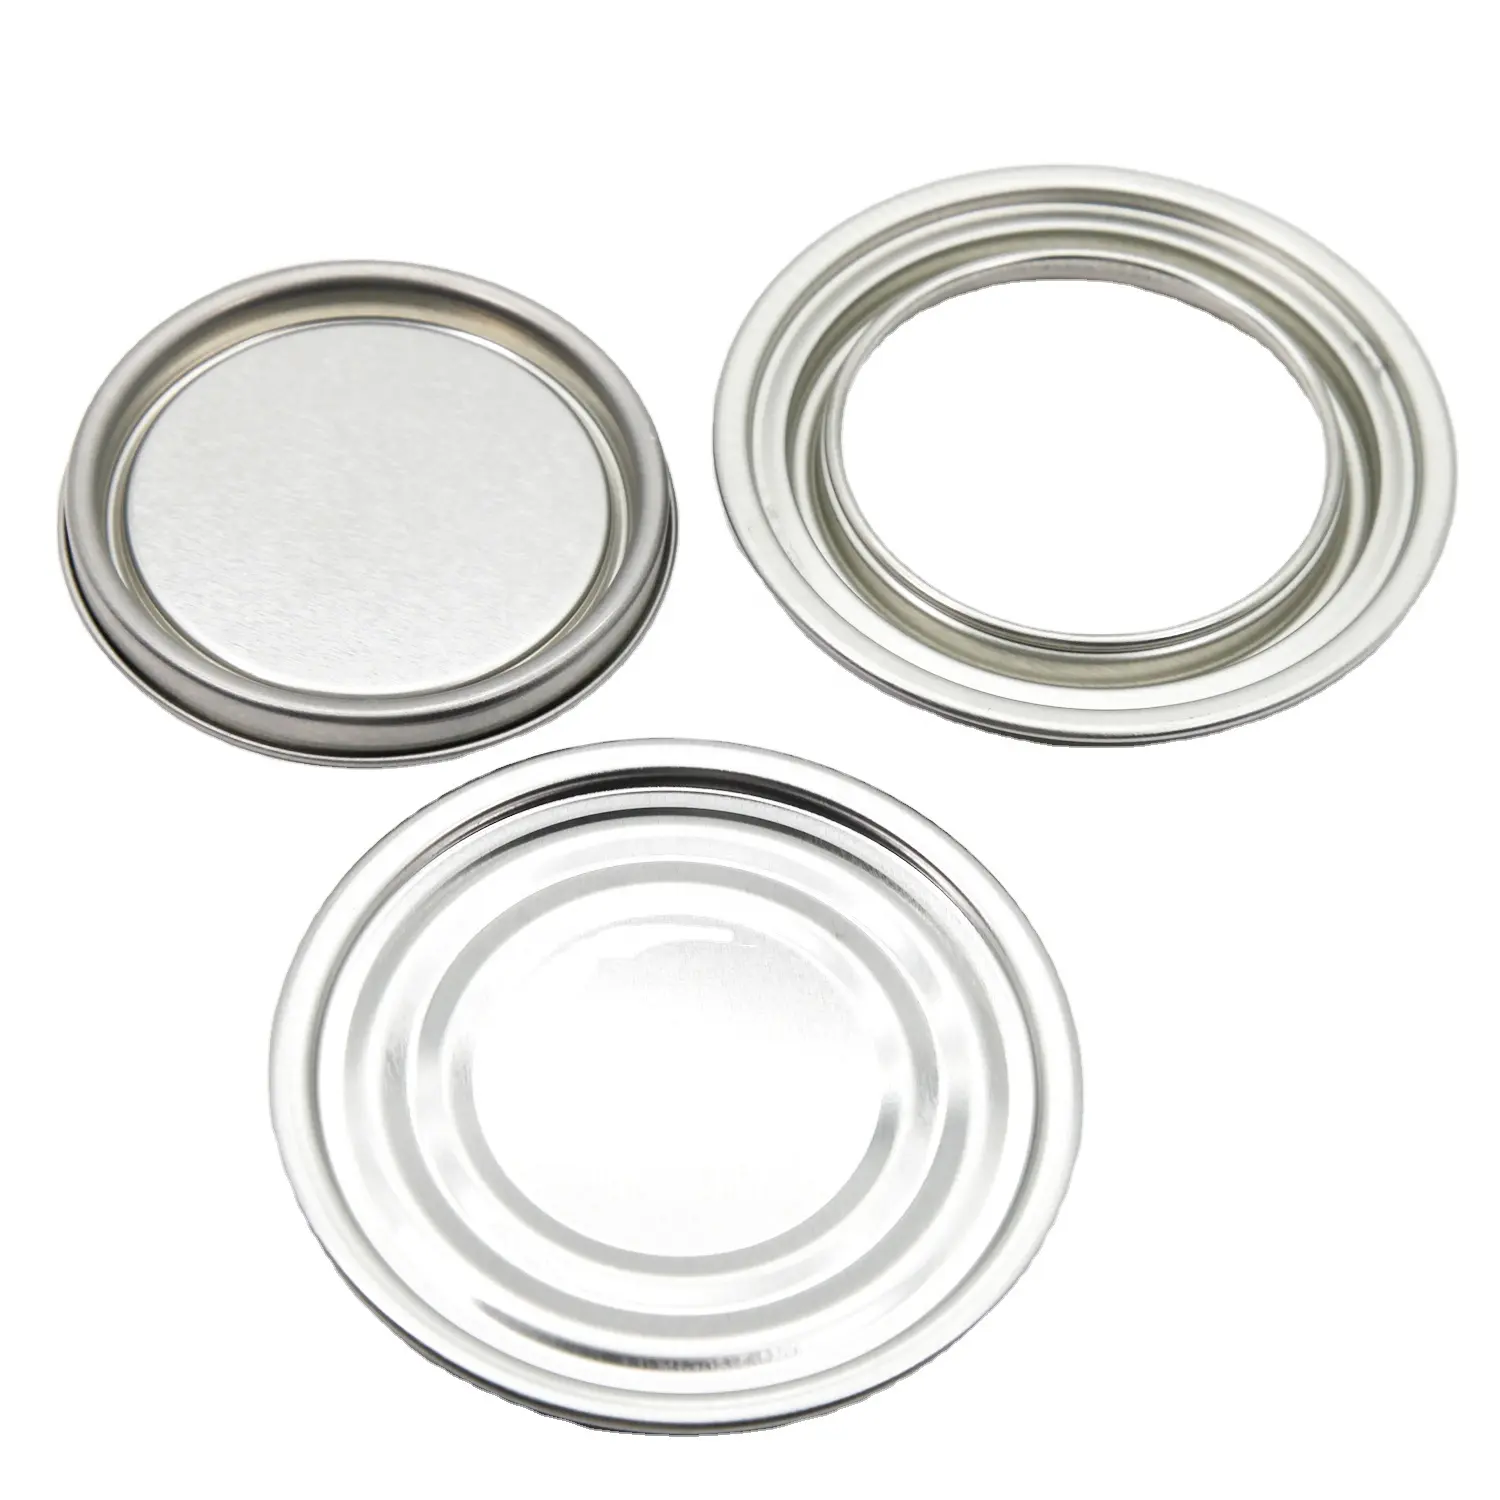 153mm Deckel-und Ring komponenten für 3, 8 5-Liter-Farbdosen Deckel abdeckung für Metall dosen